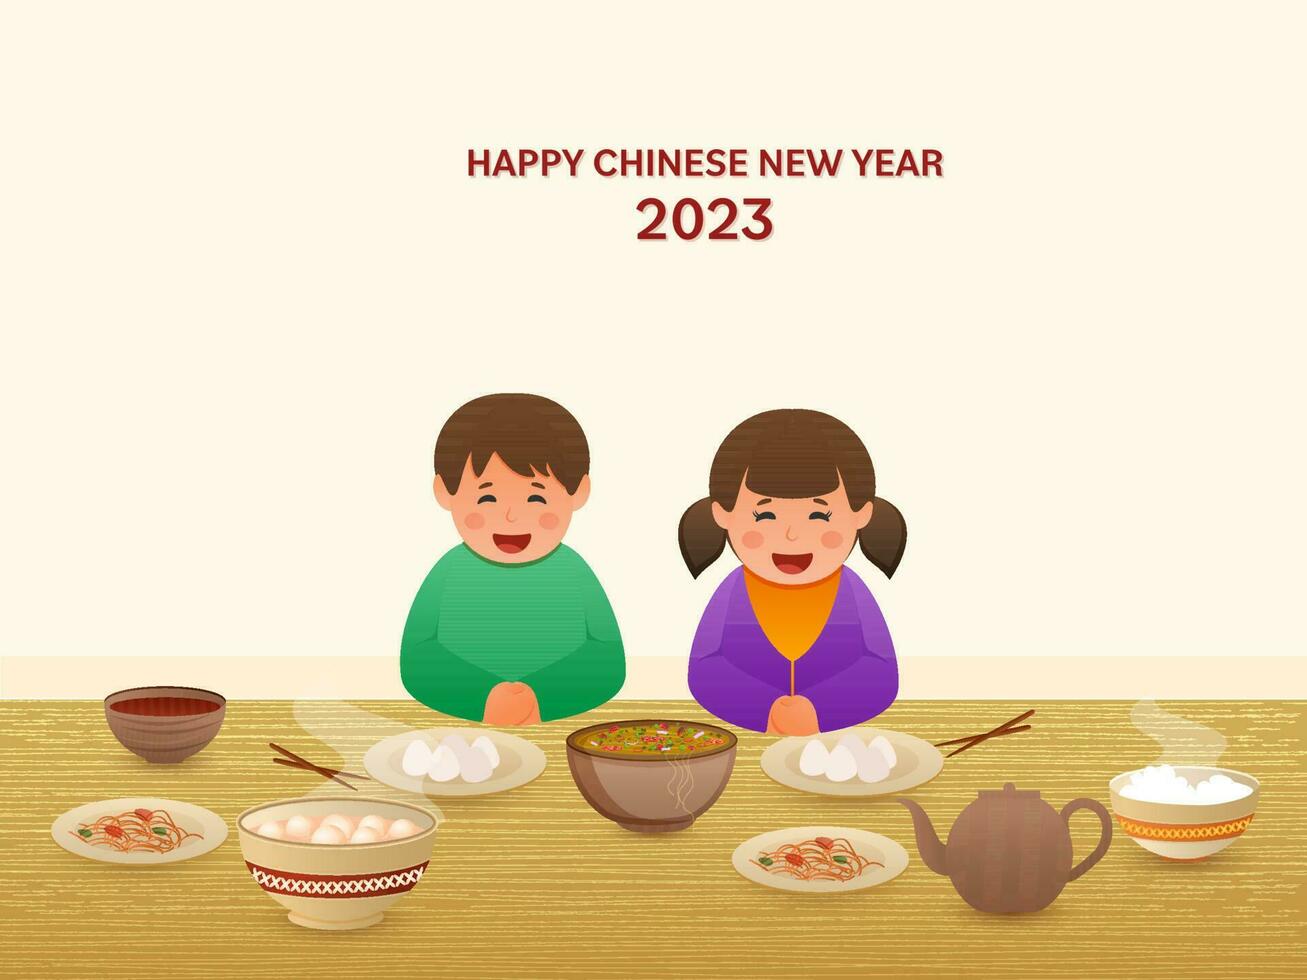 alegre chino sentado en frente de delicioso comidas en el ocasión de contento chino nuevo año 2023. vector